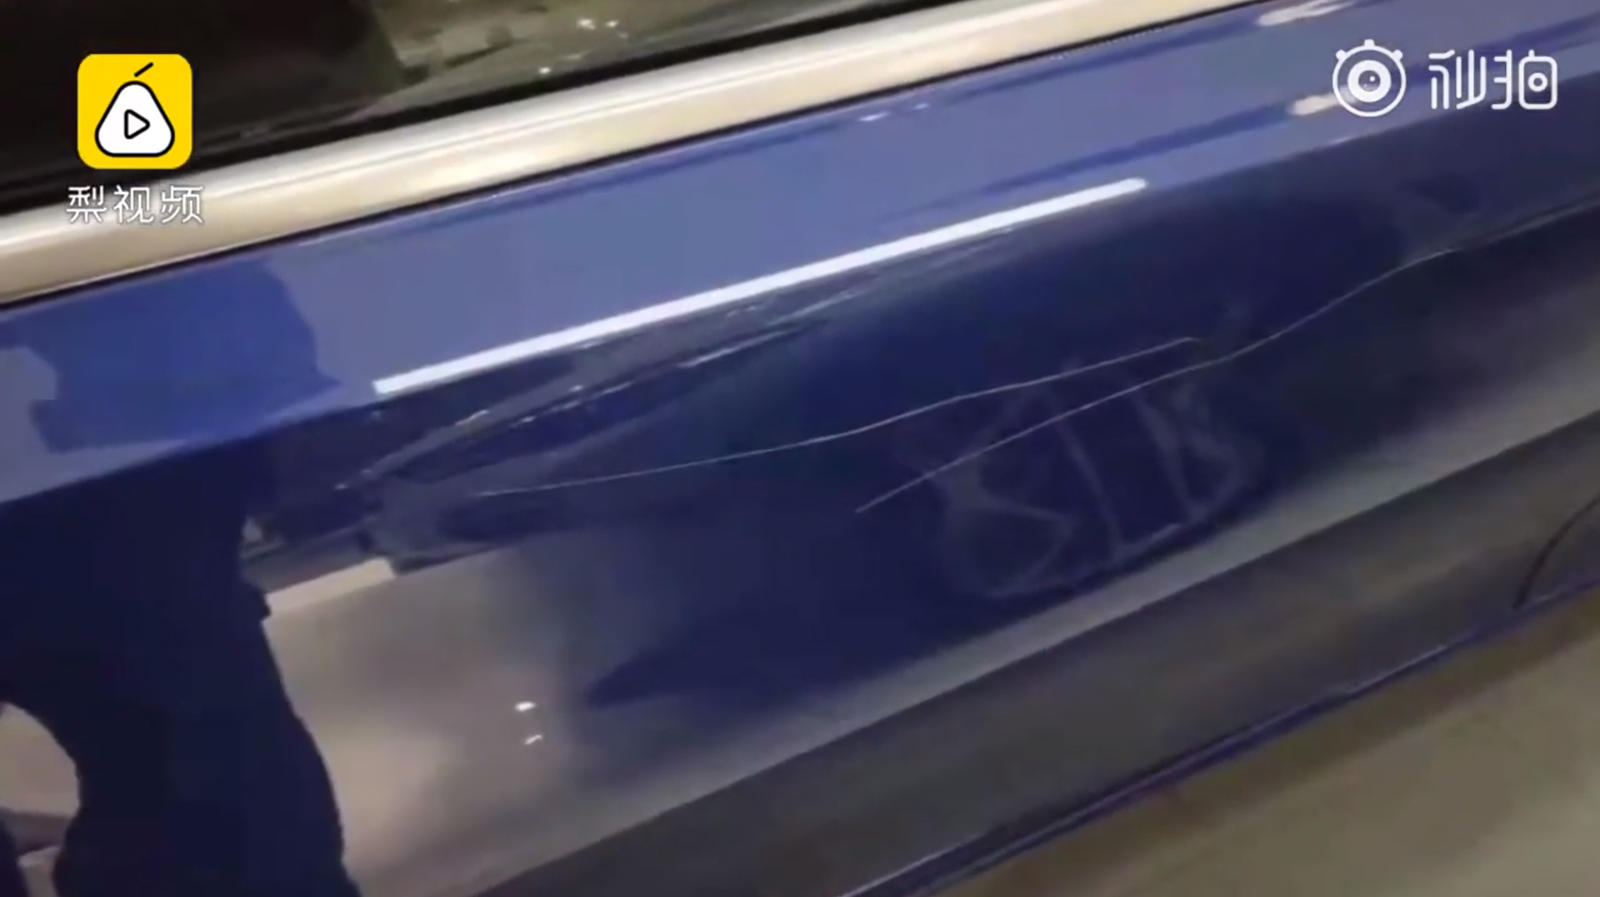 "بالفيديو والصور" مراهق يلحق الضرر بسيارة بي ام دبليو في الوكالة لإجبار والده على شرائها 20